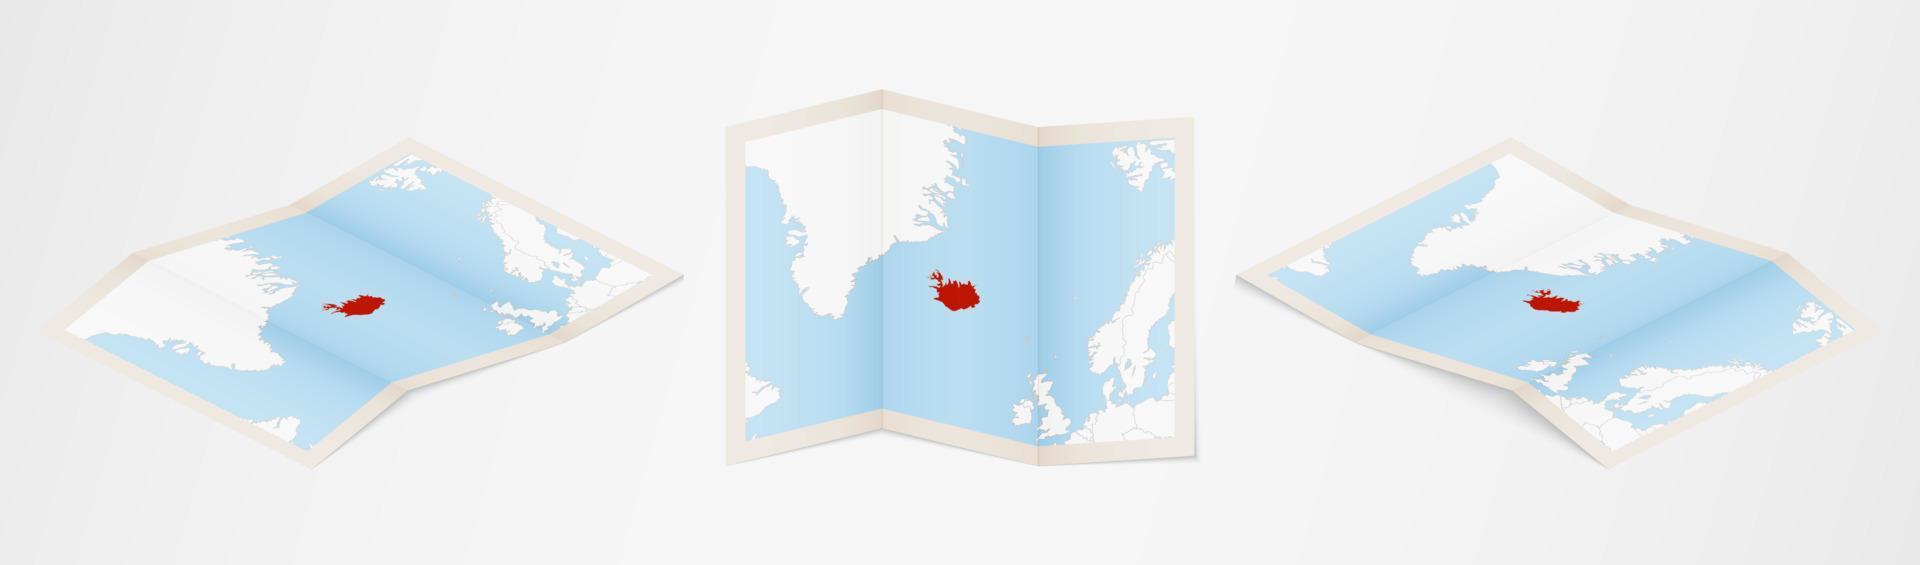 Faltkarte von Island in drei verschiedenen Versionen. vektor